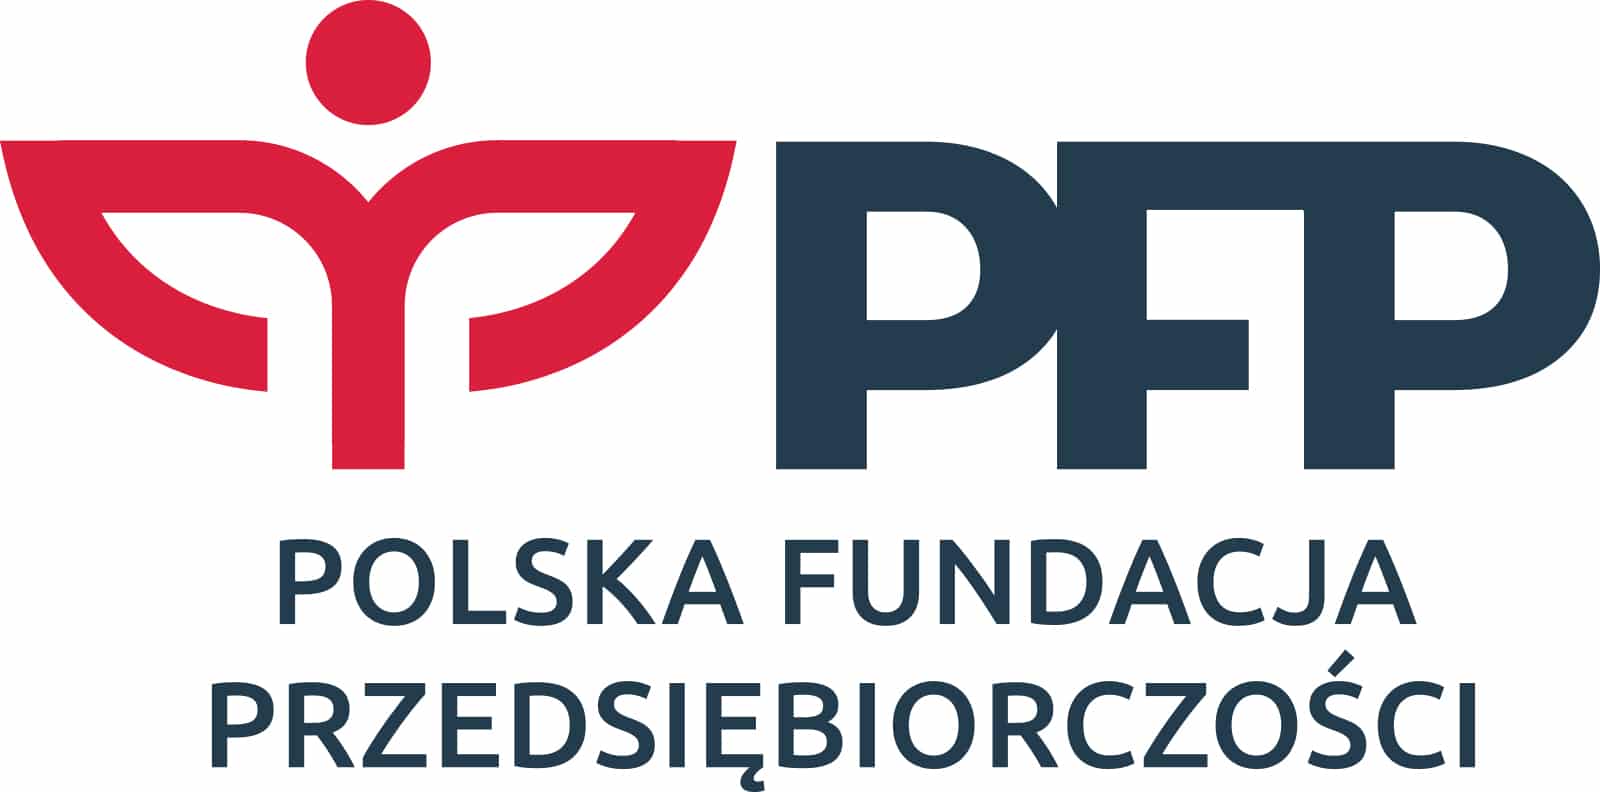 Logo Polska Fundacja Przedsiębiorczości